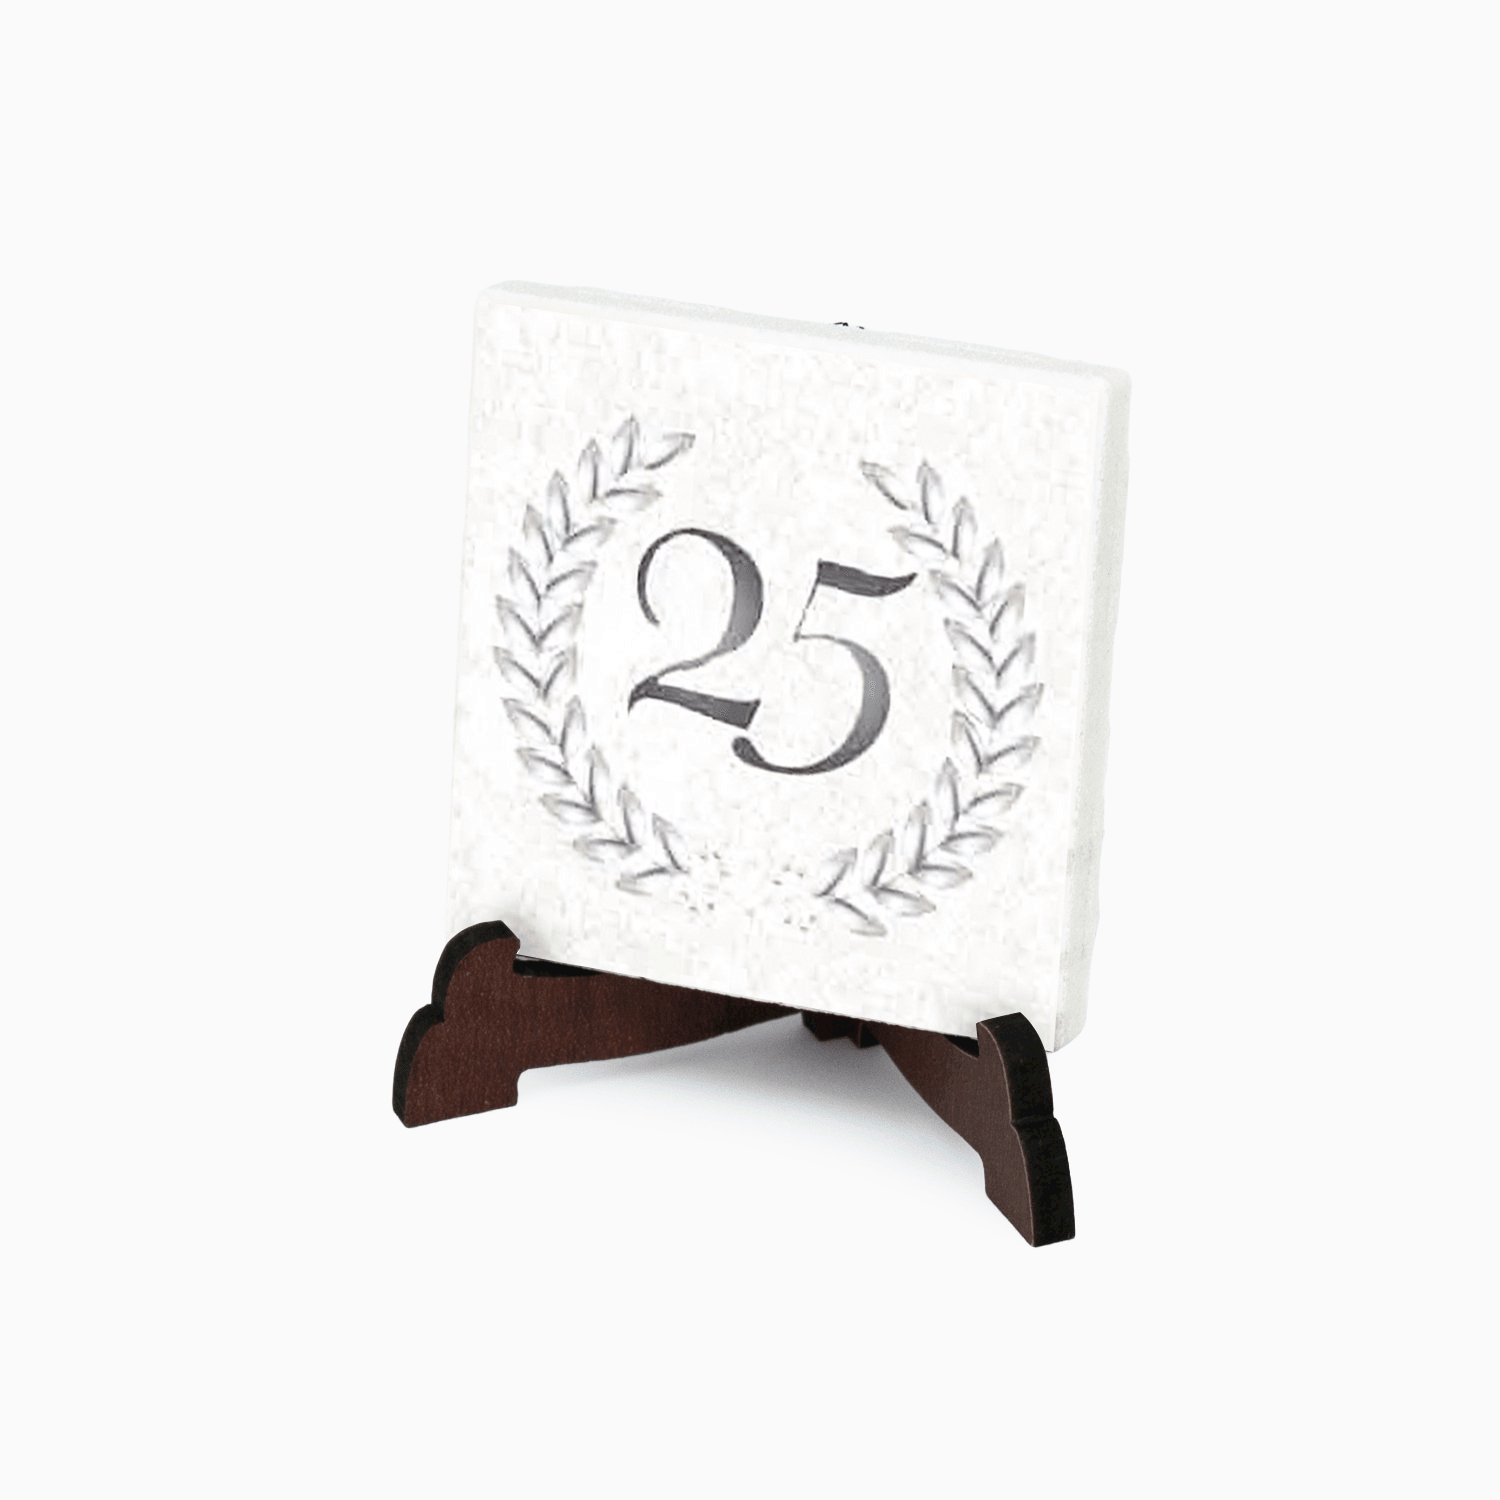 Piastrella Anniversario Quadrata in Gres Porcellanato Decorata con supporto da Appoggio in PVC e Magnete Magneti Albalu Bomboniere 25 anni  